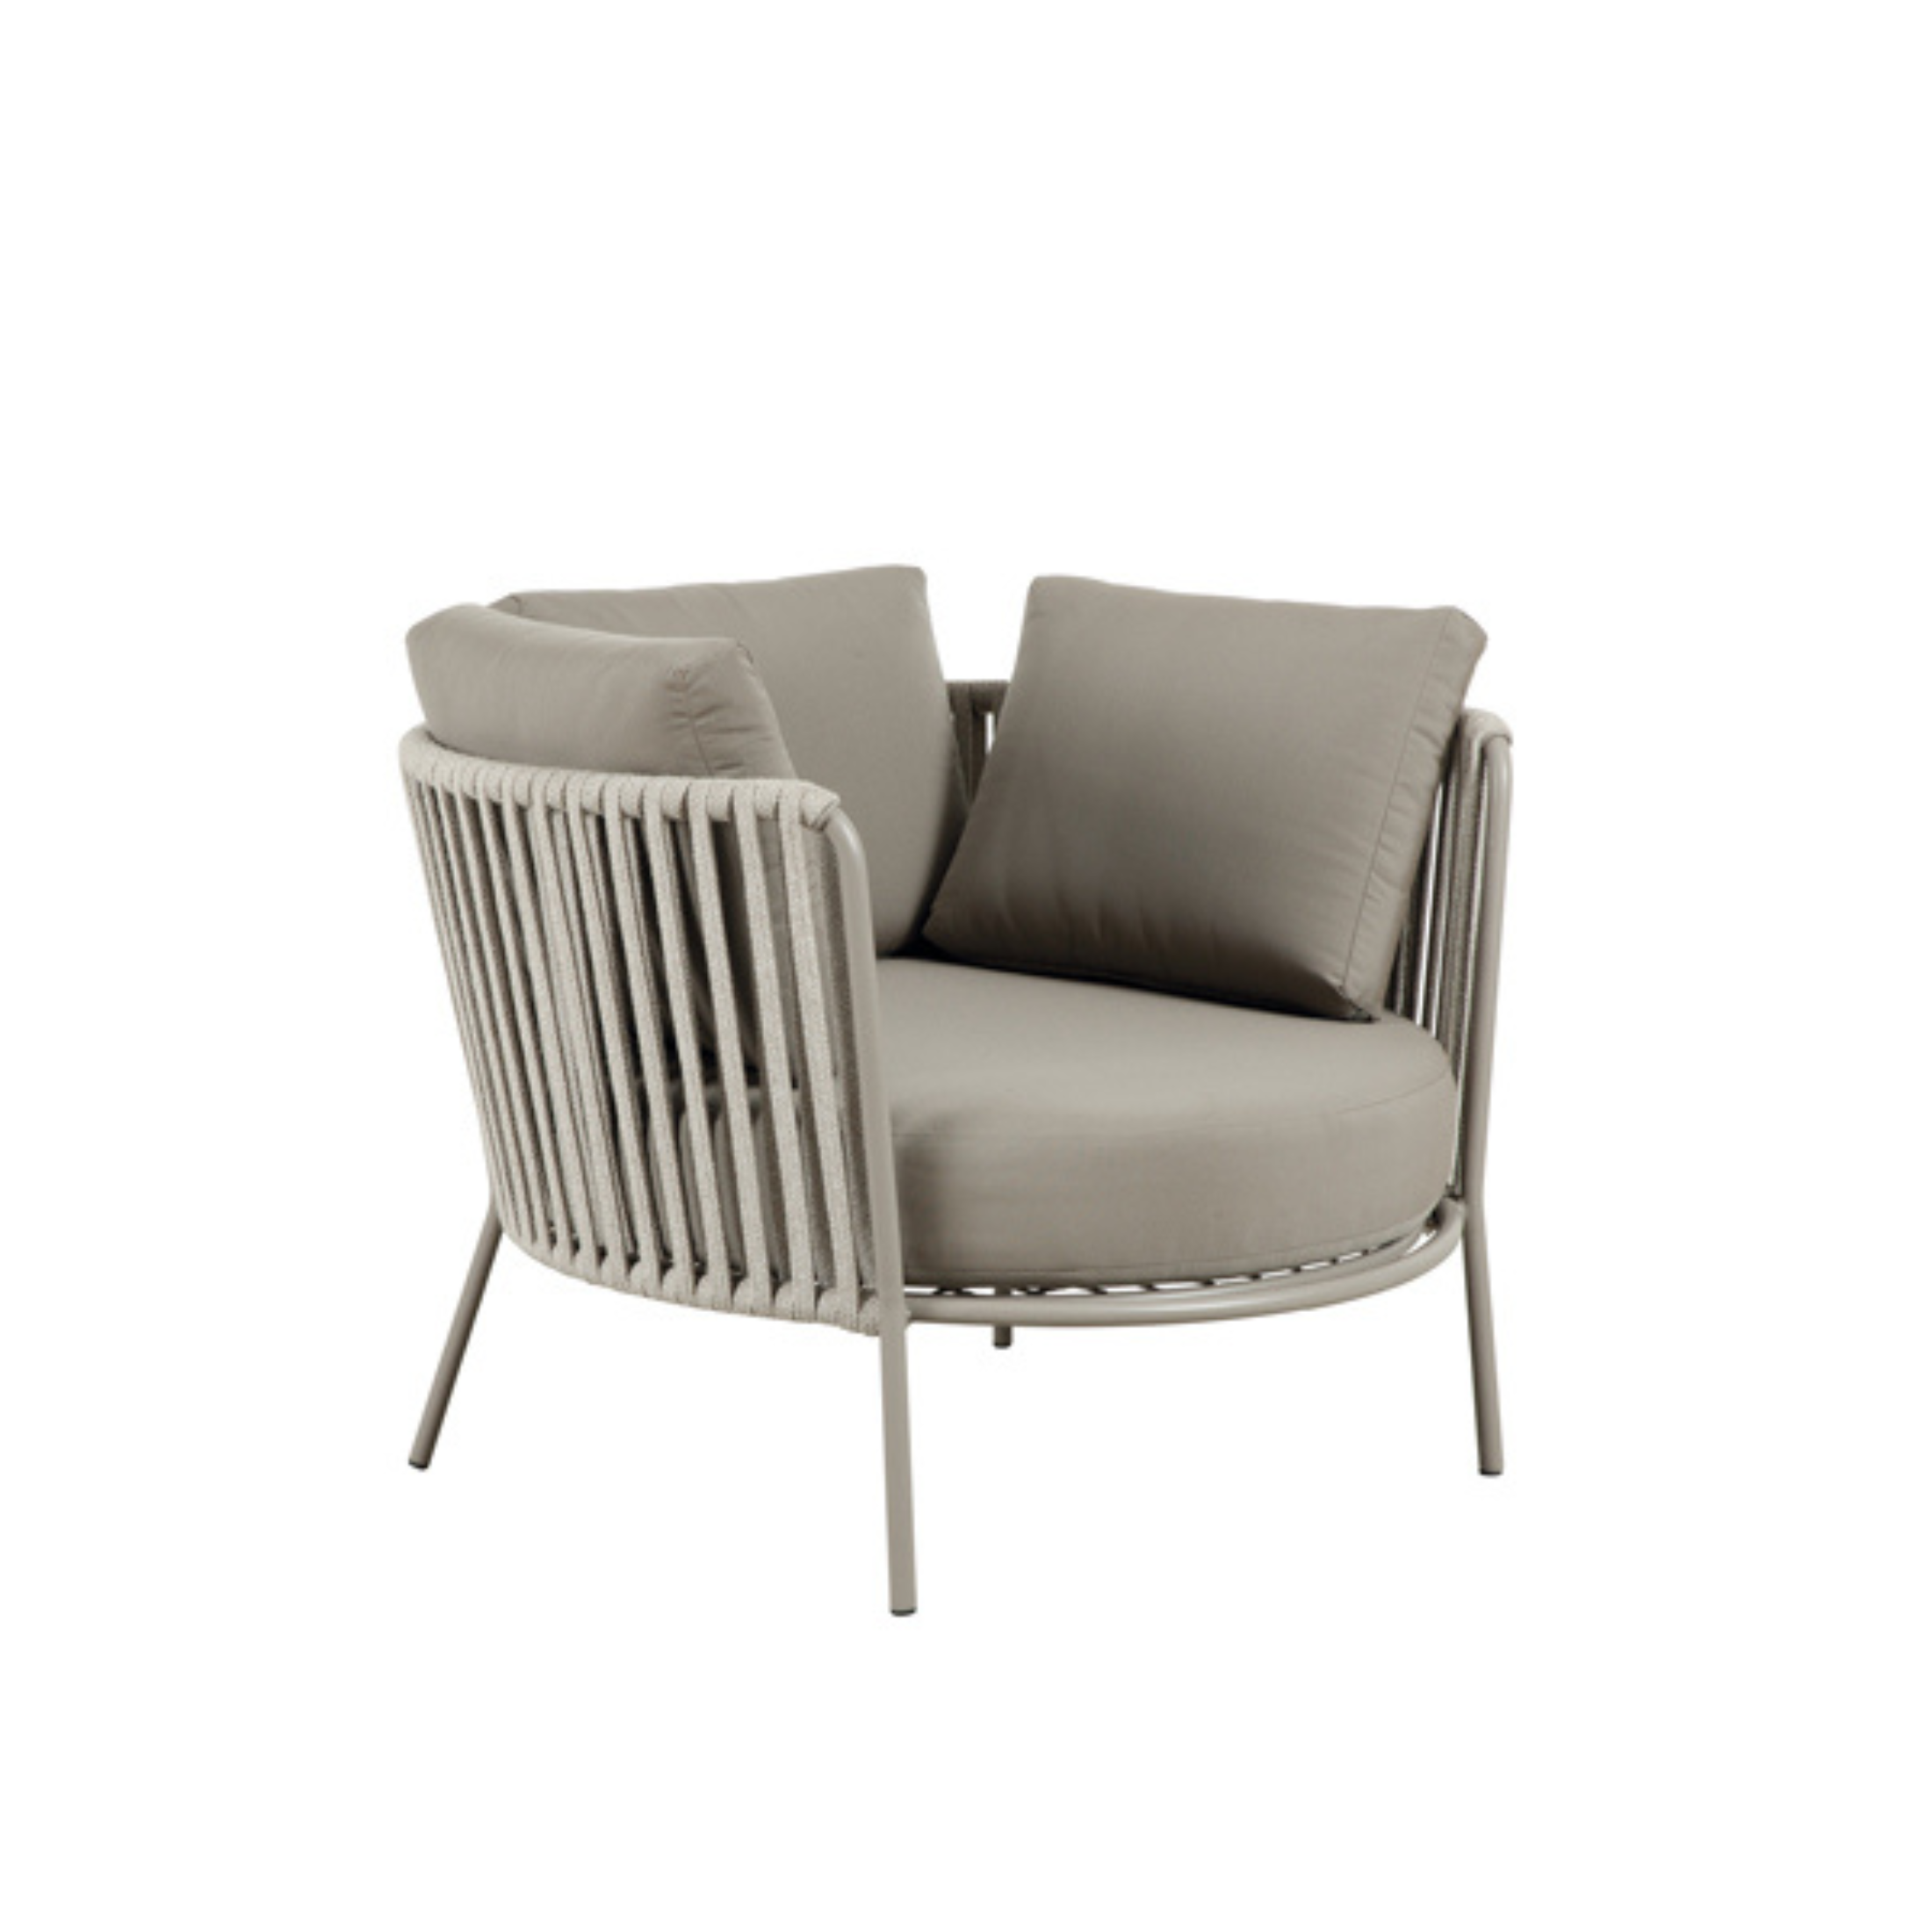 Maxi fauteuil bas en corde et métal chaise longue de jardin "Daisy Rope" 104x104 cm 71h